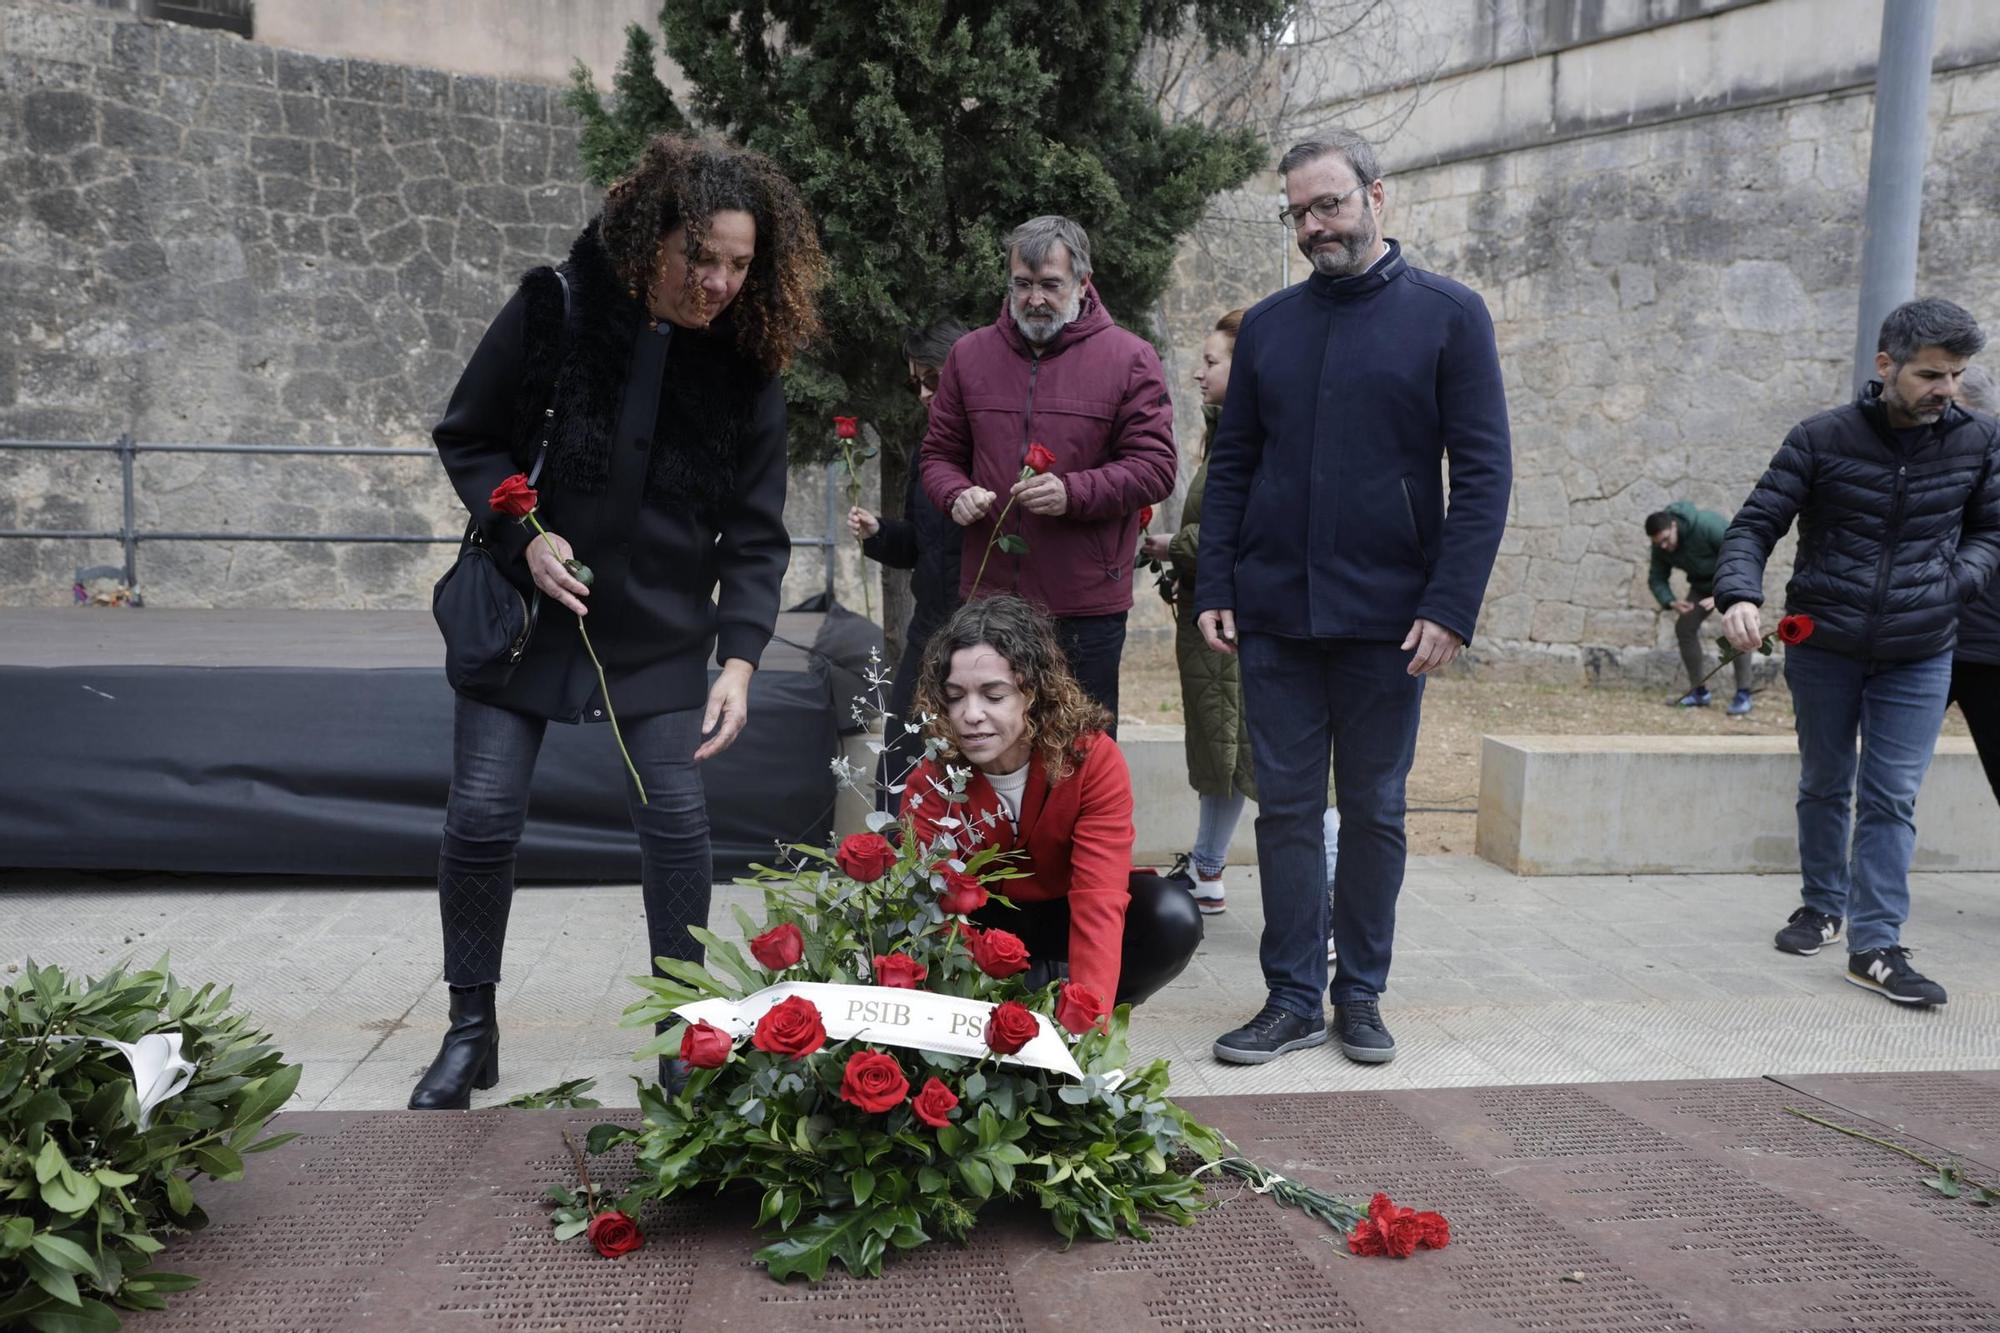 Las críticas al Ayuntamiento de Palma y a la extrema derecha centran el homenaje a los represaliados del franquismo: "Quieren esconder la memoria democrática"